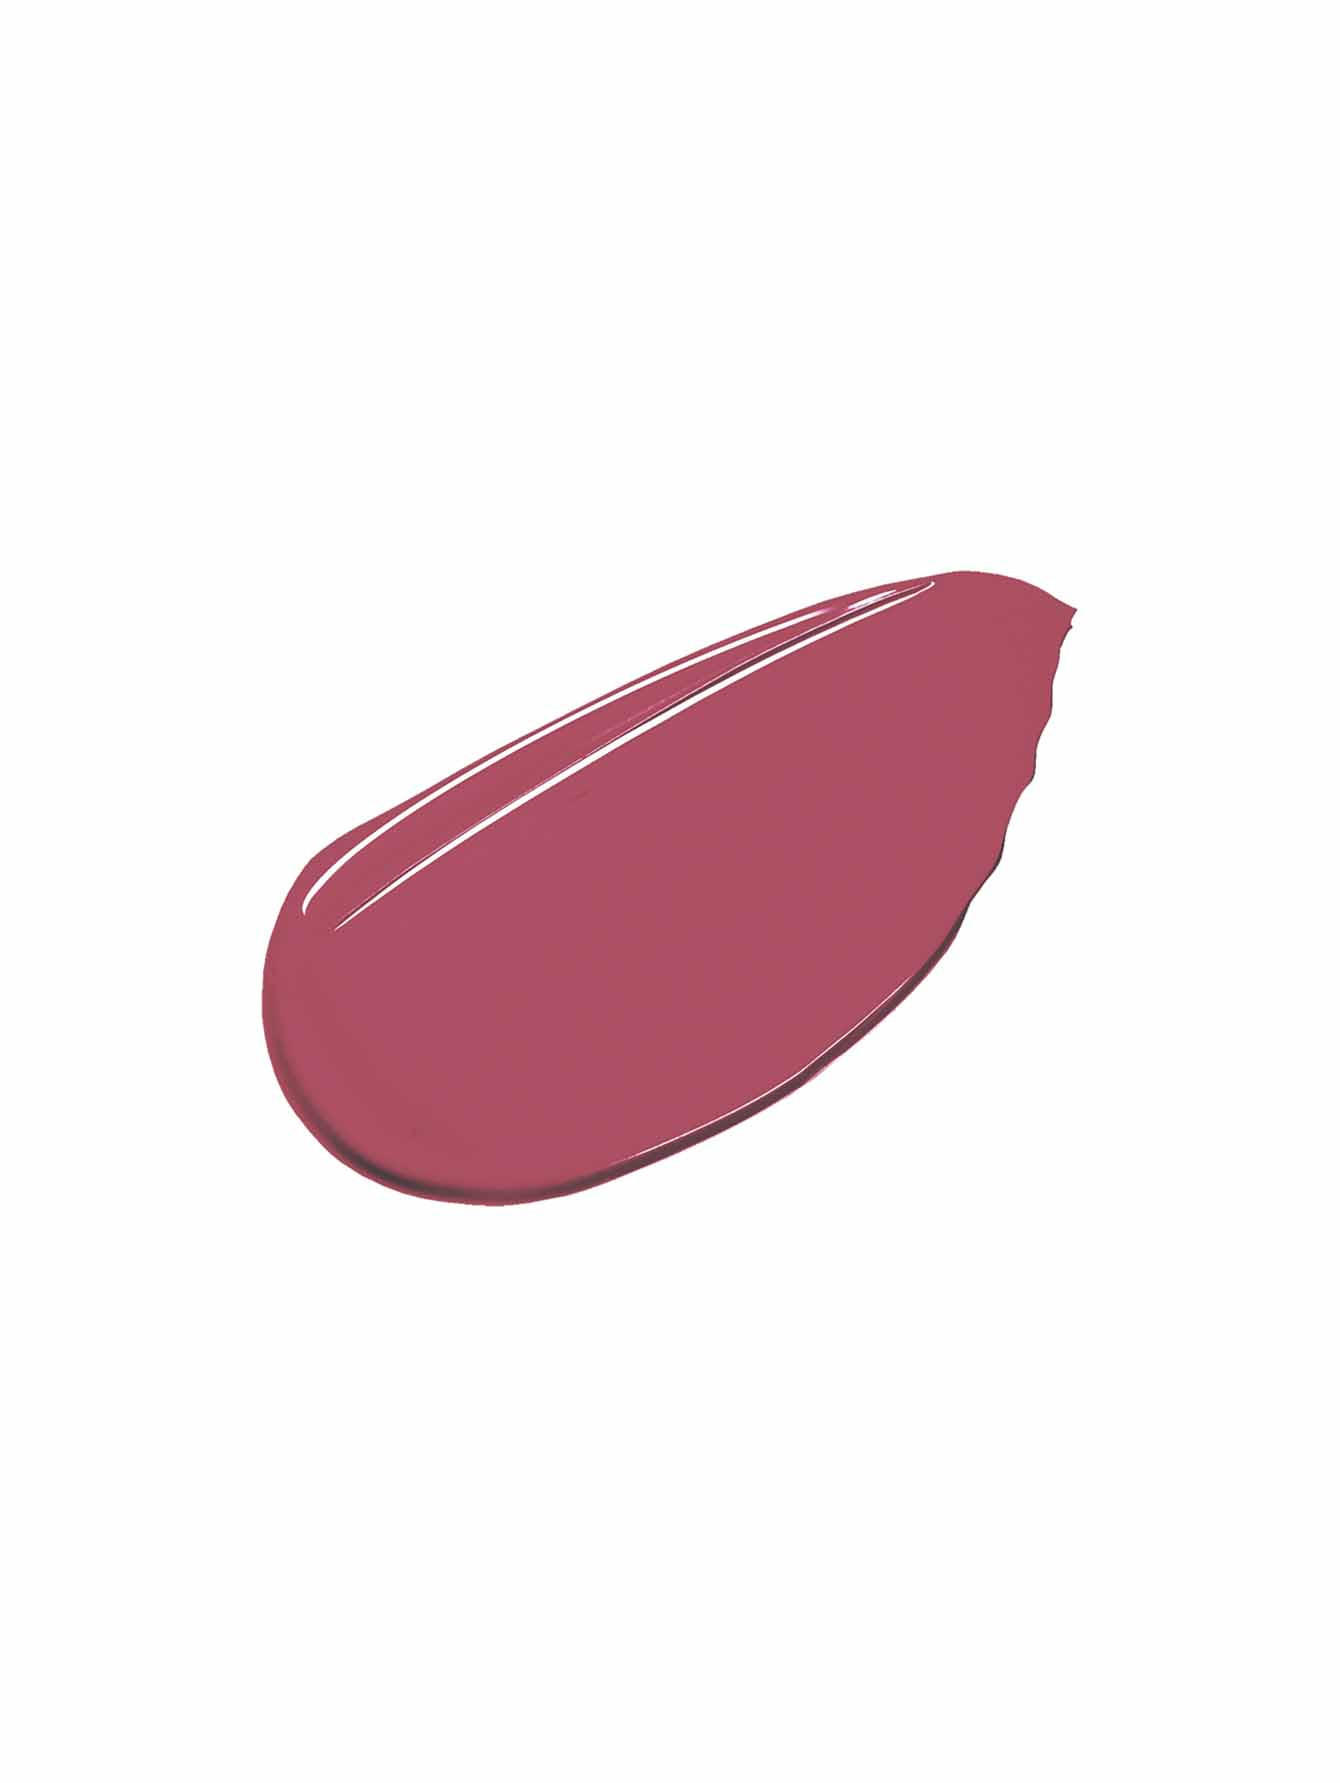 Рефил губной помады Contouring Lipstick, СL07 Pale Pink, 2 г - Обтравка1